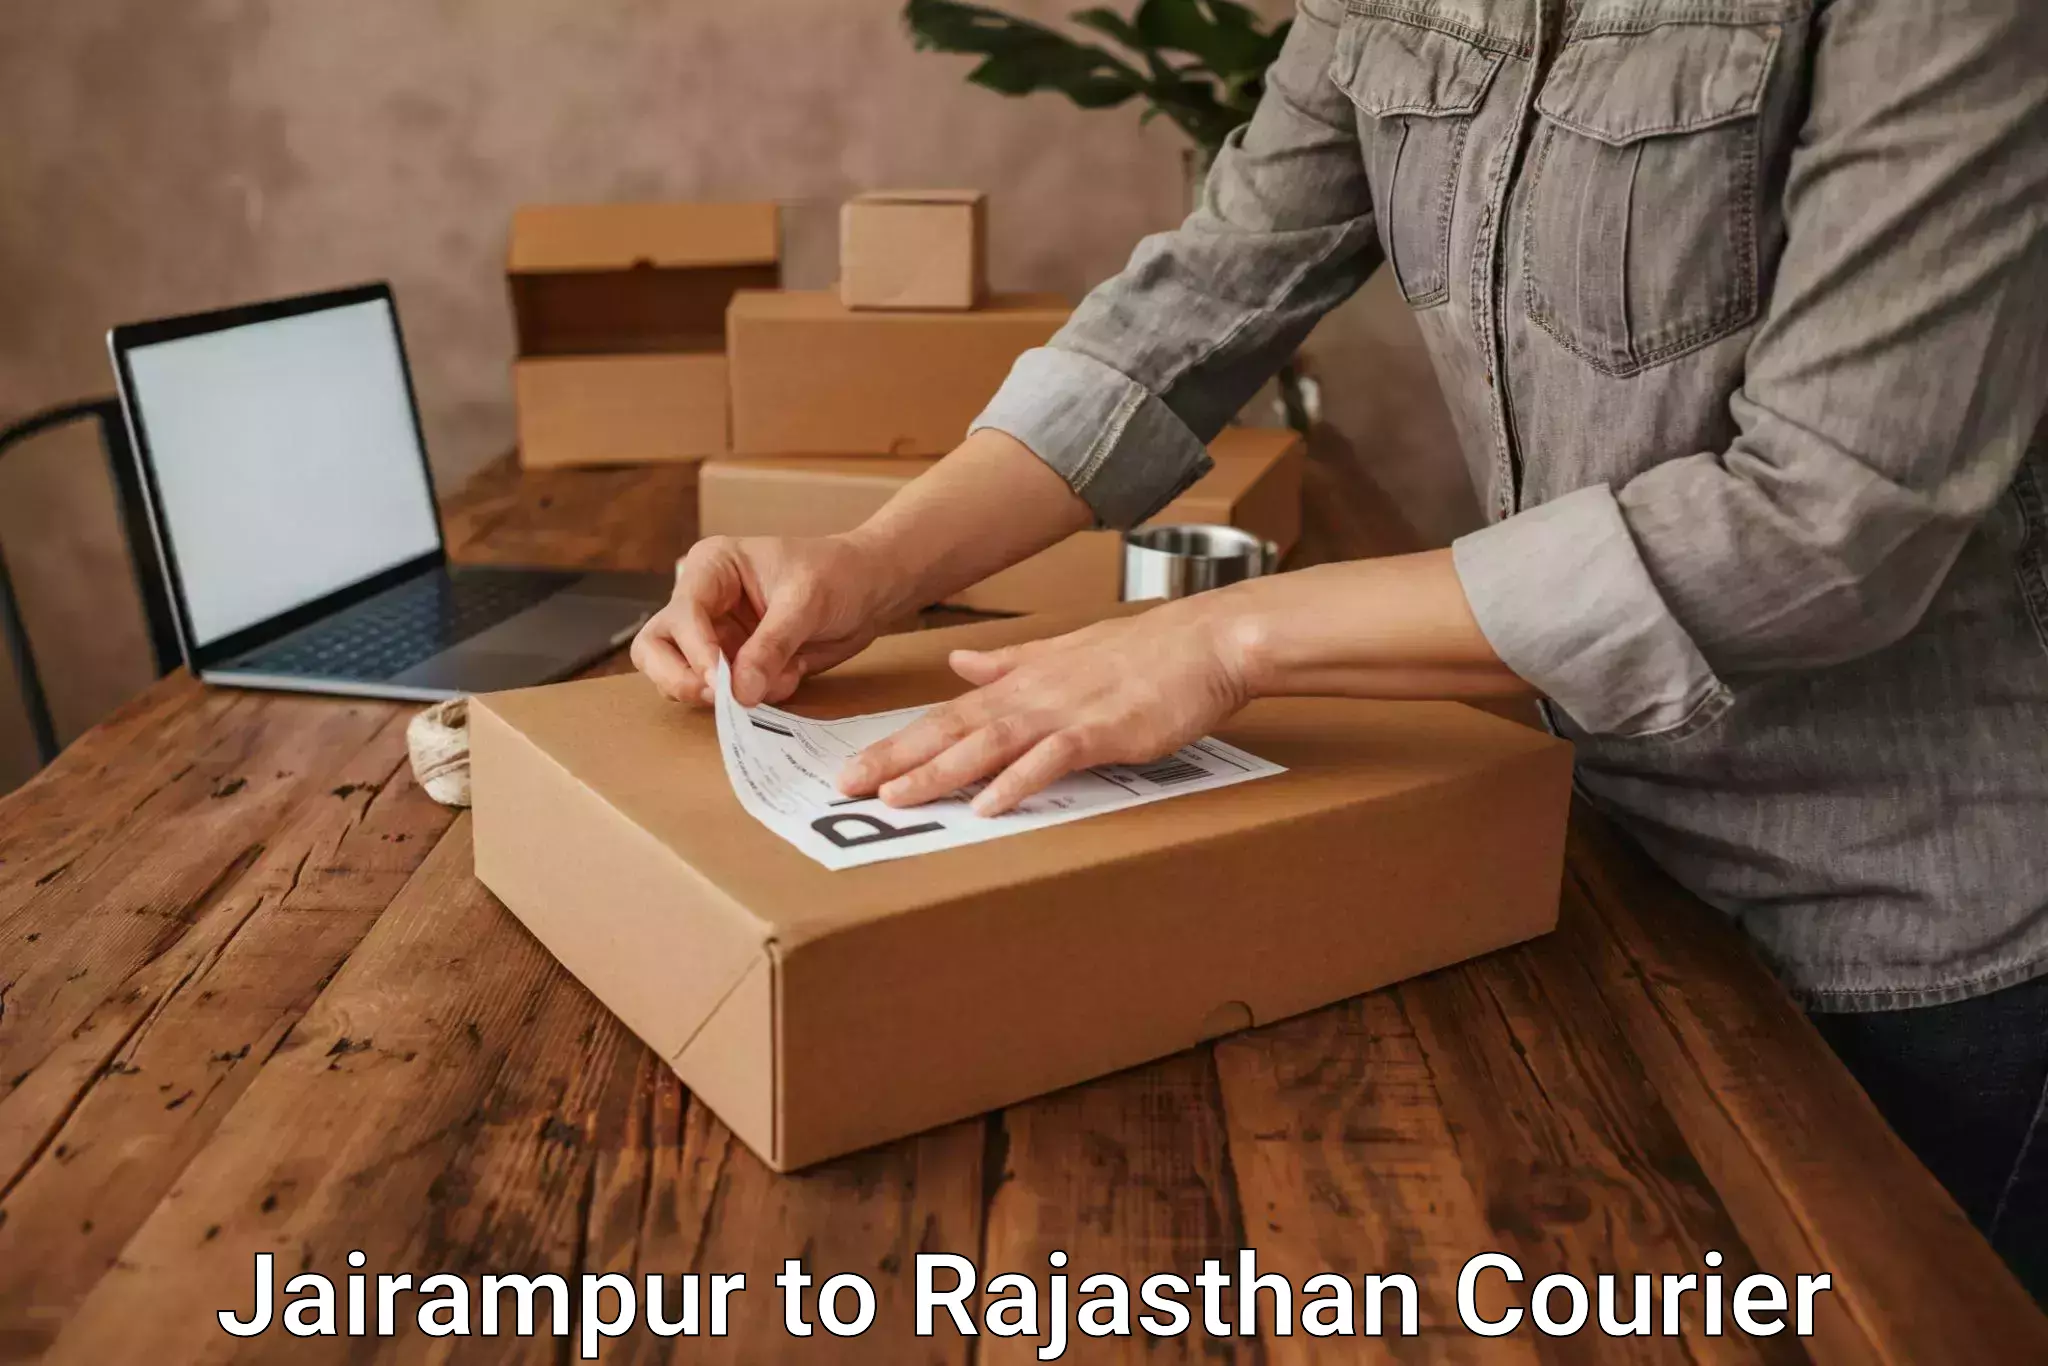 Courier service comparison Jairampur to Bikaner